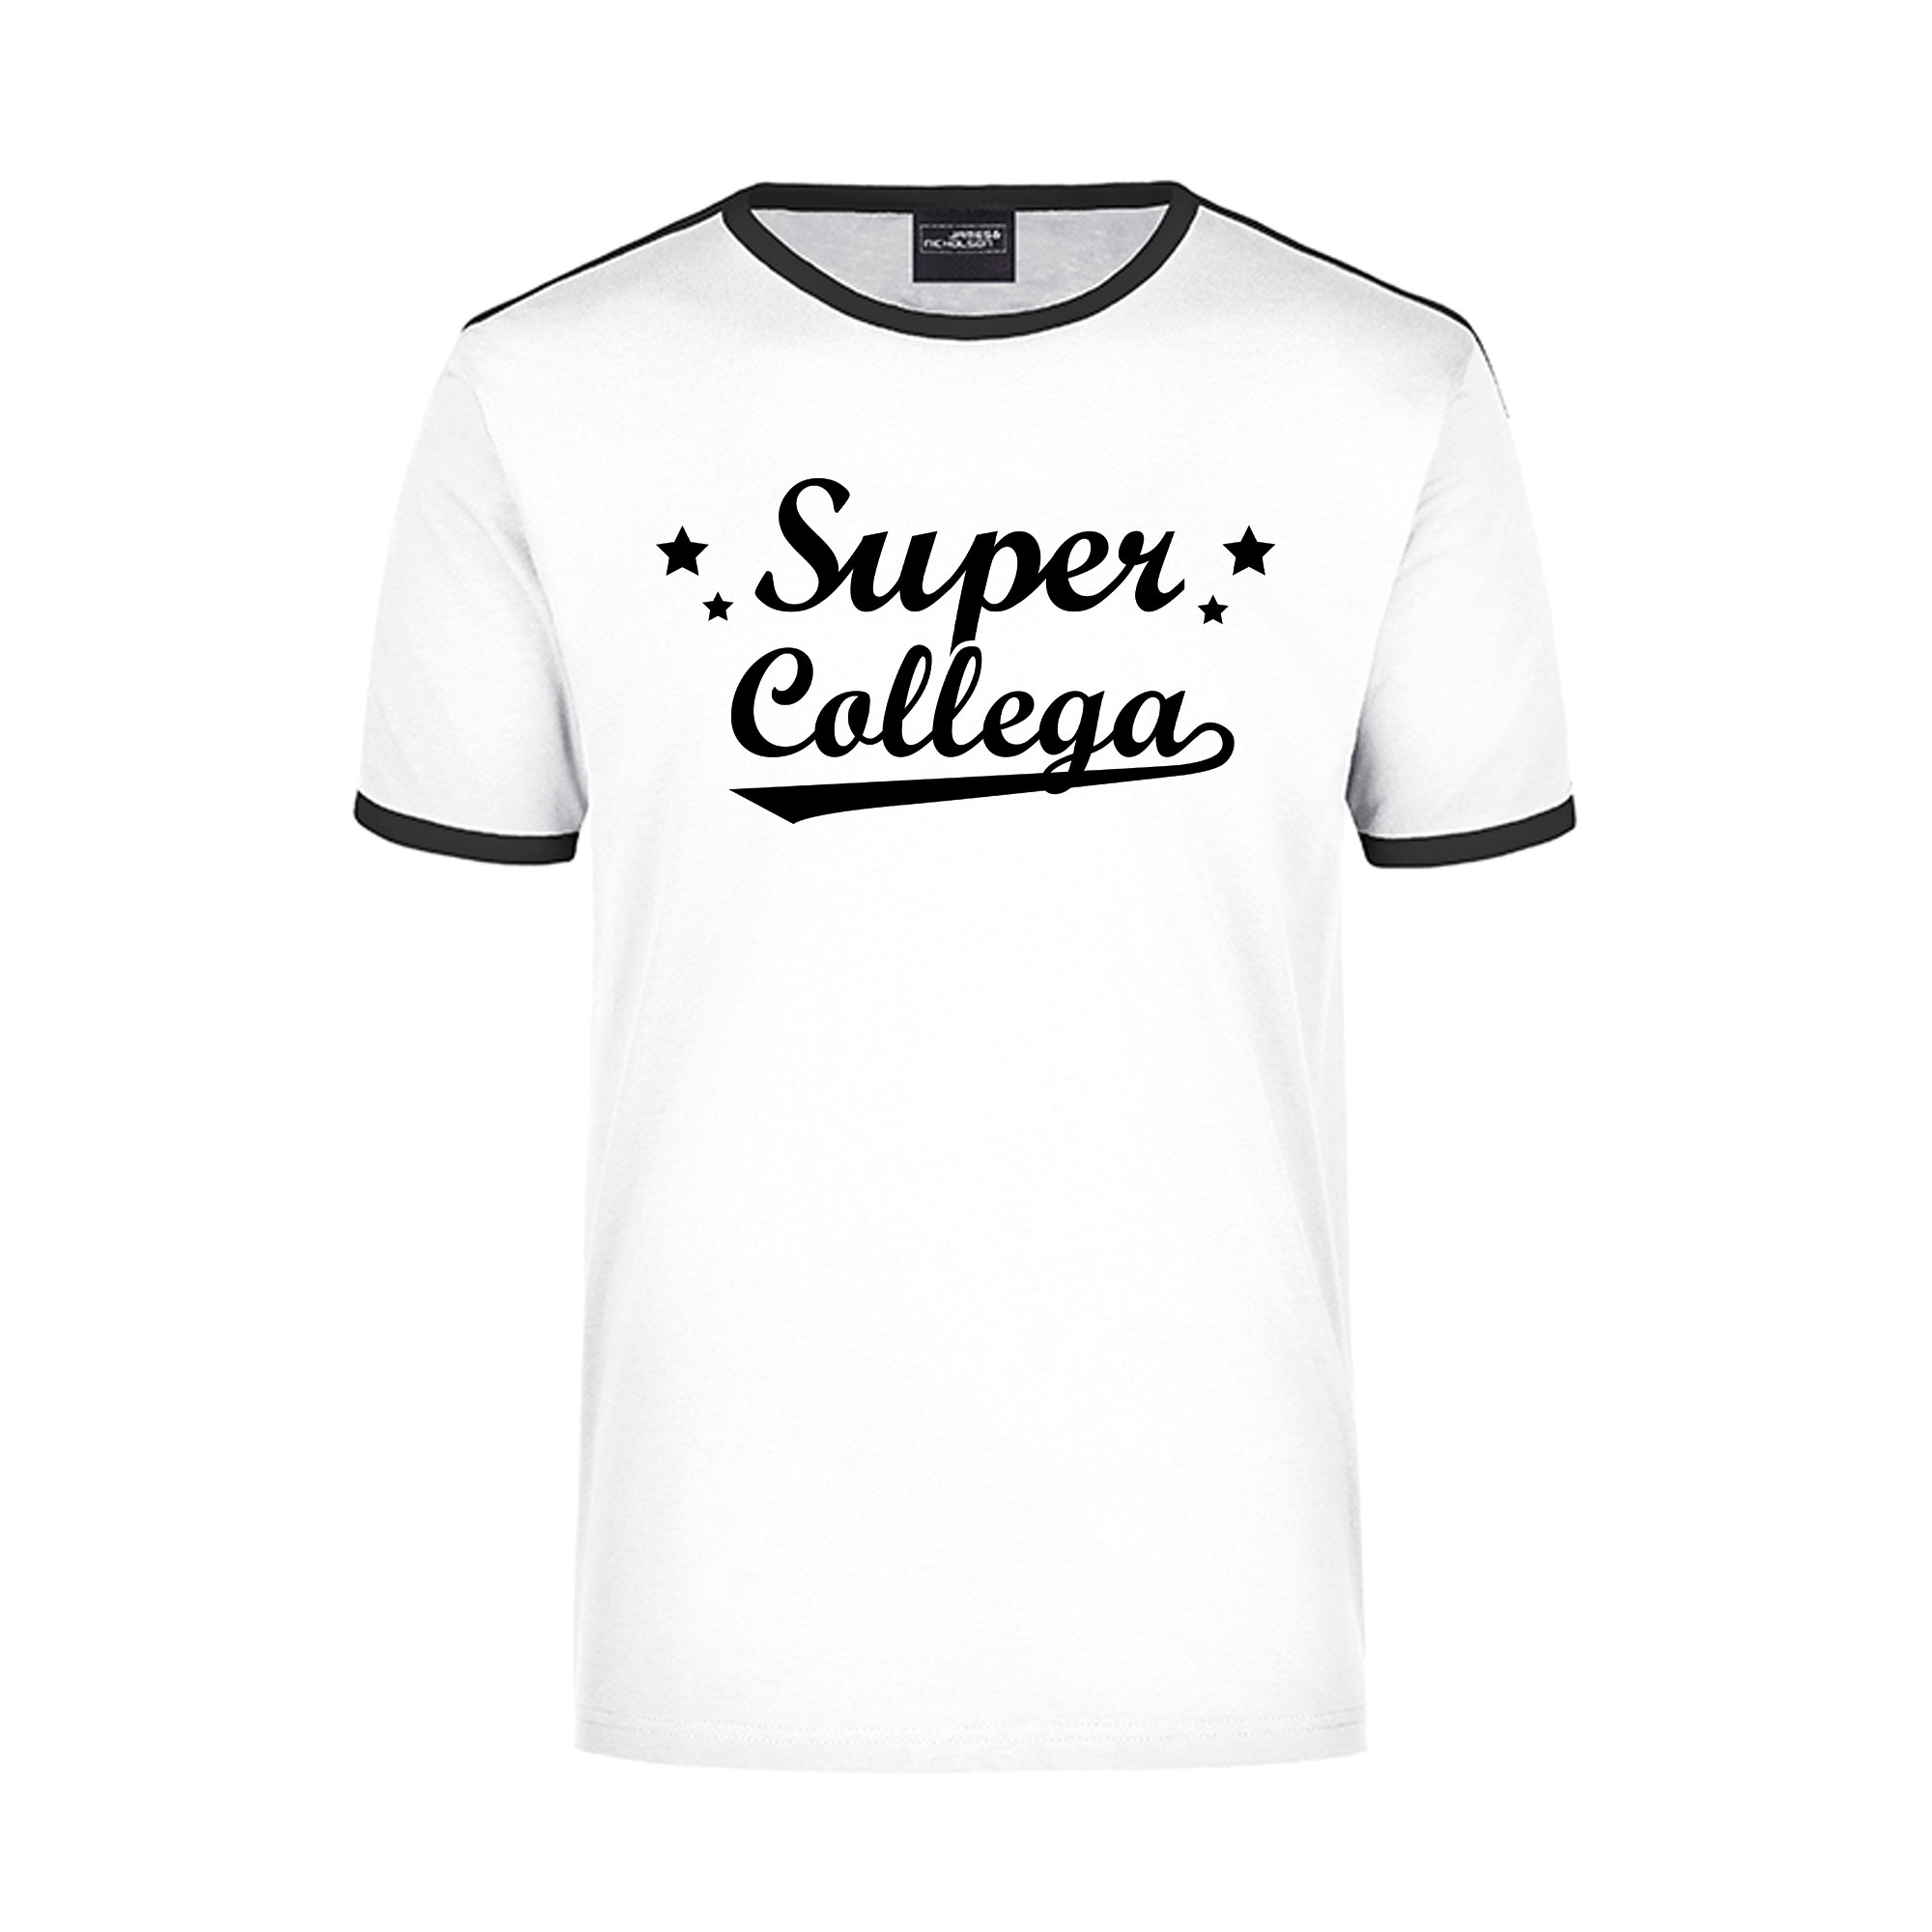 Super collega wit-zwart ringer t-shirt voor heren